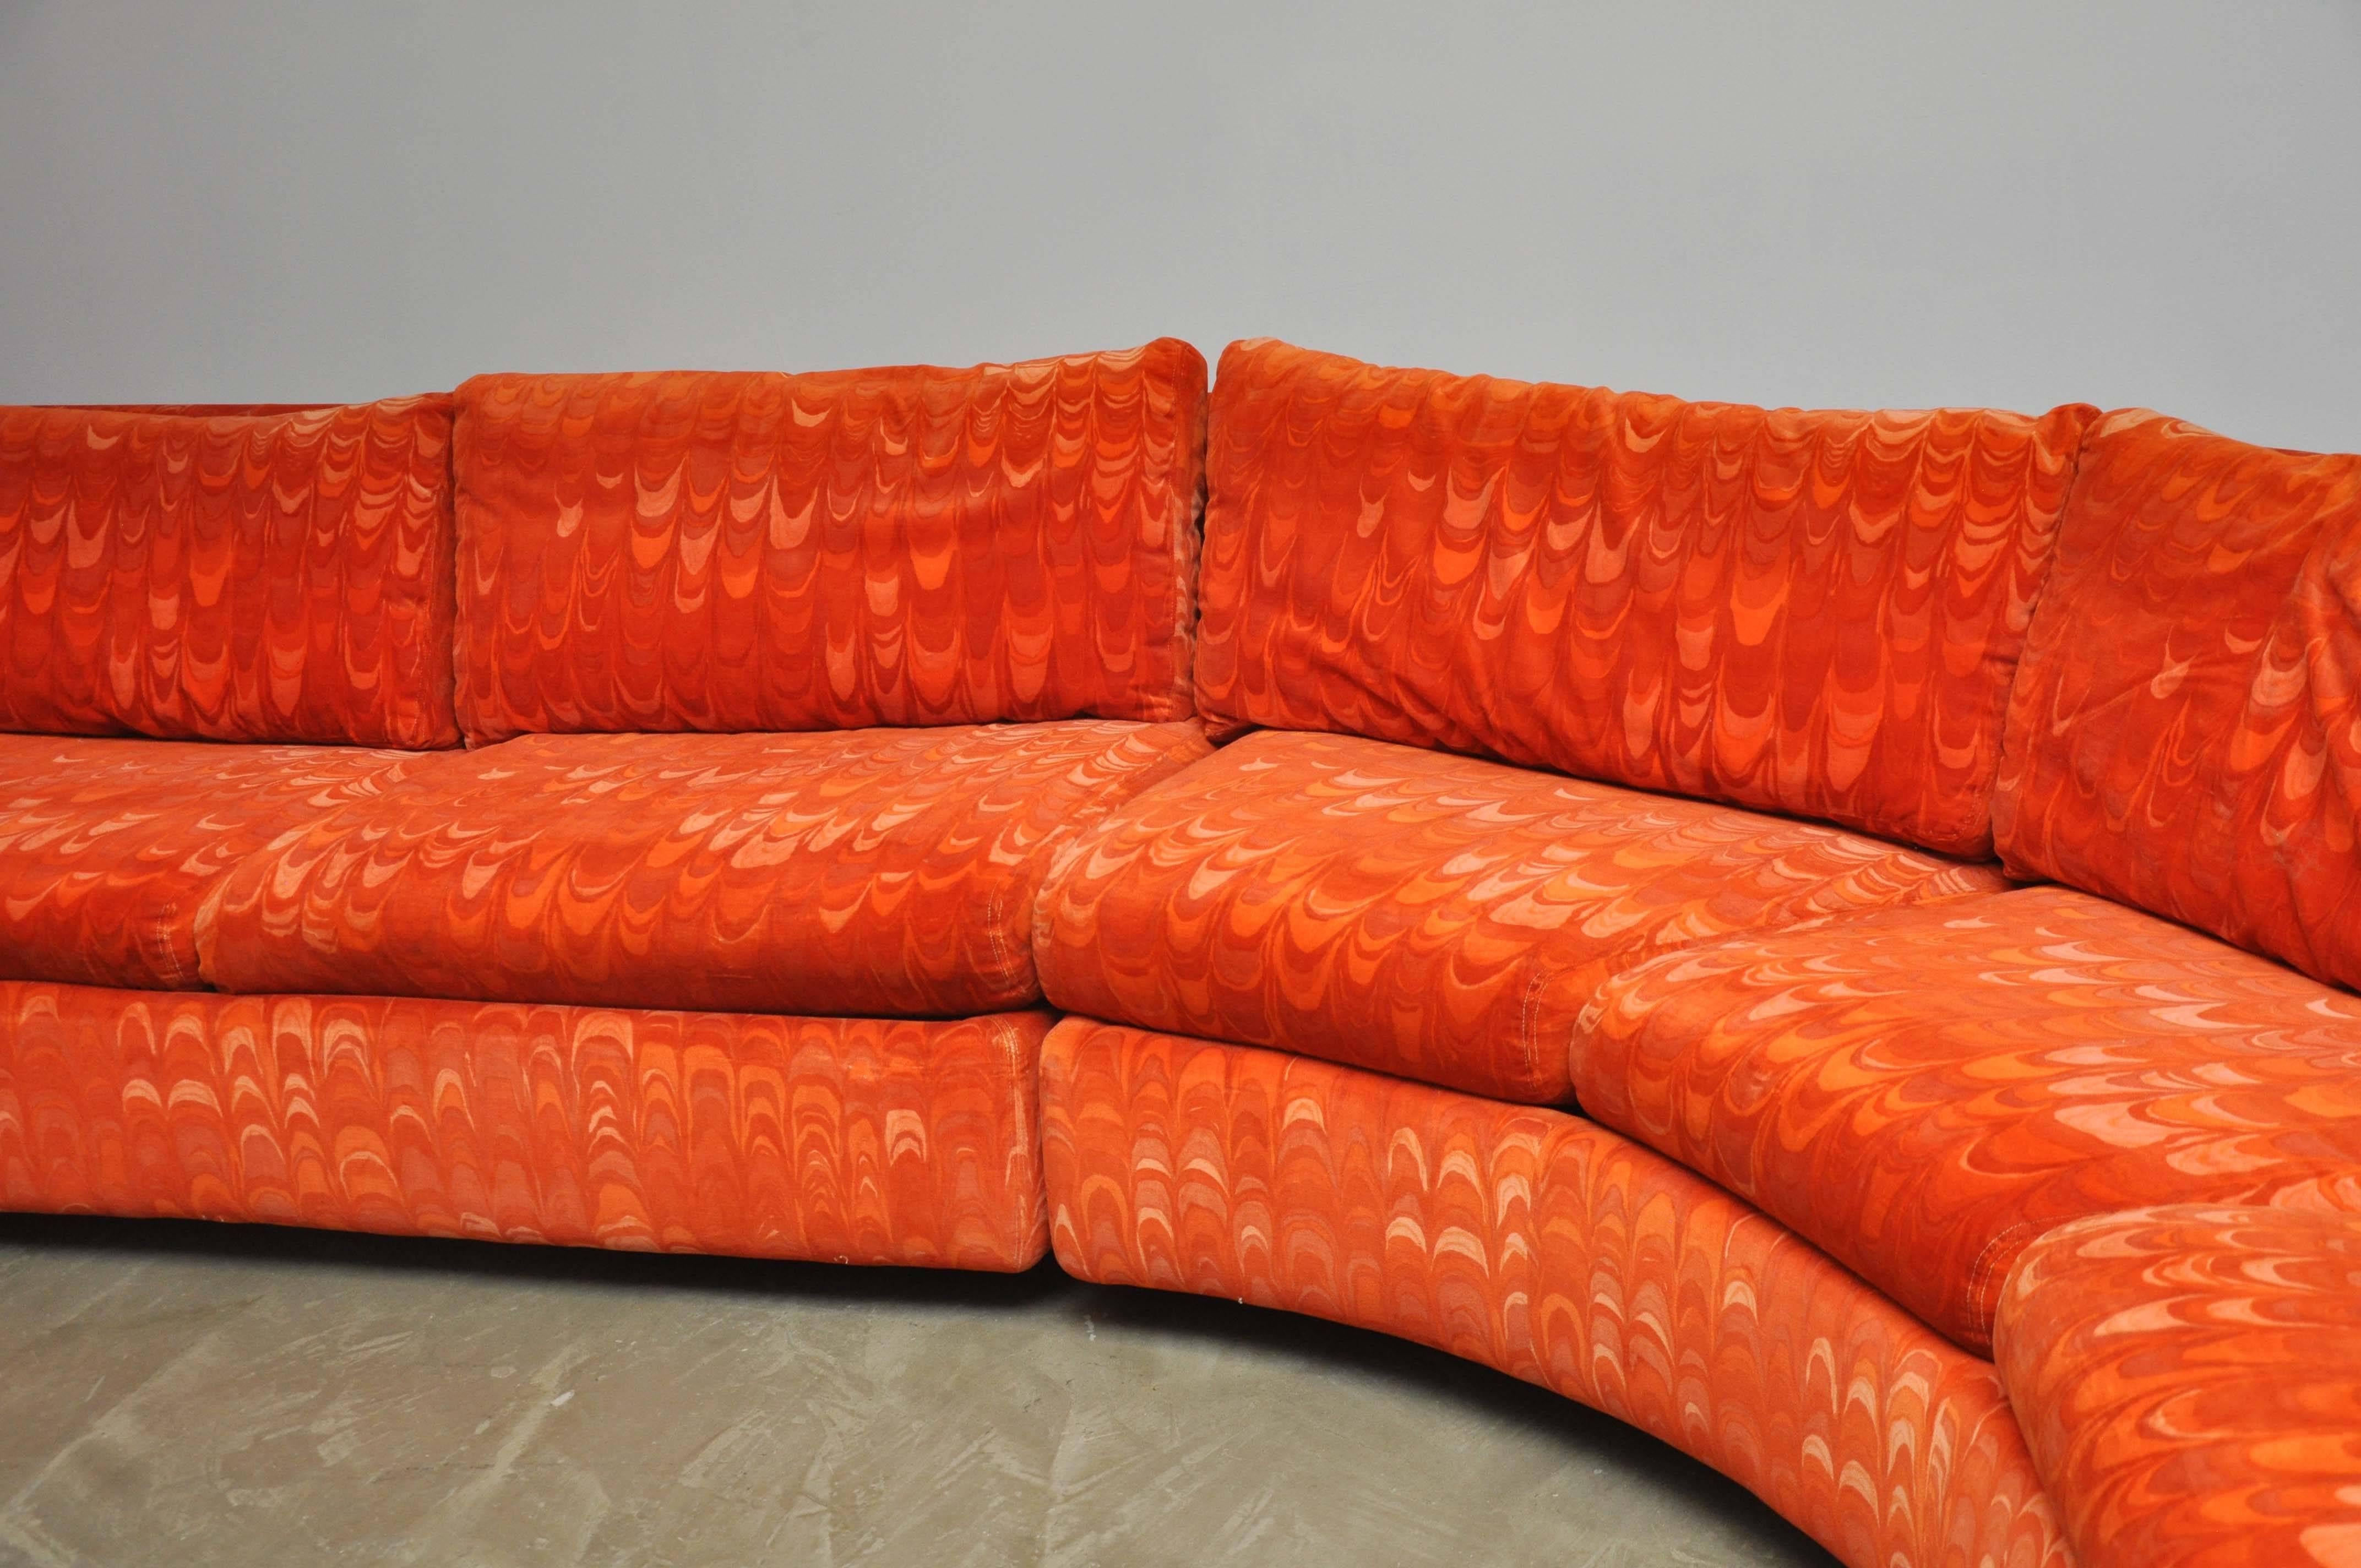 American Metropolitan Sectional Sofa in Jack Lenor Larsen Velvet